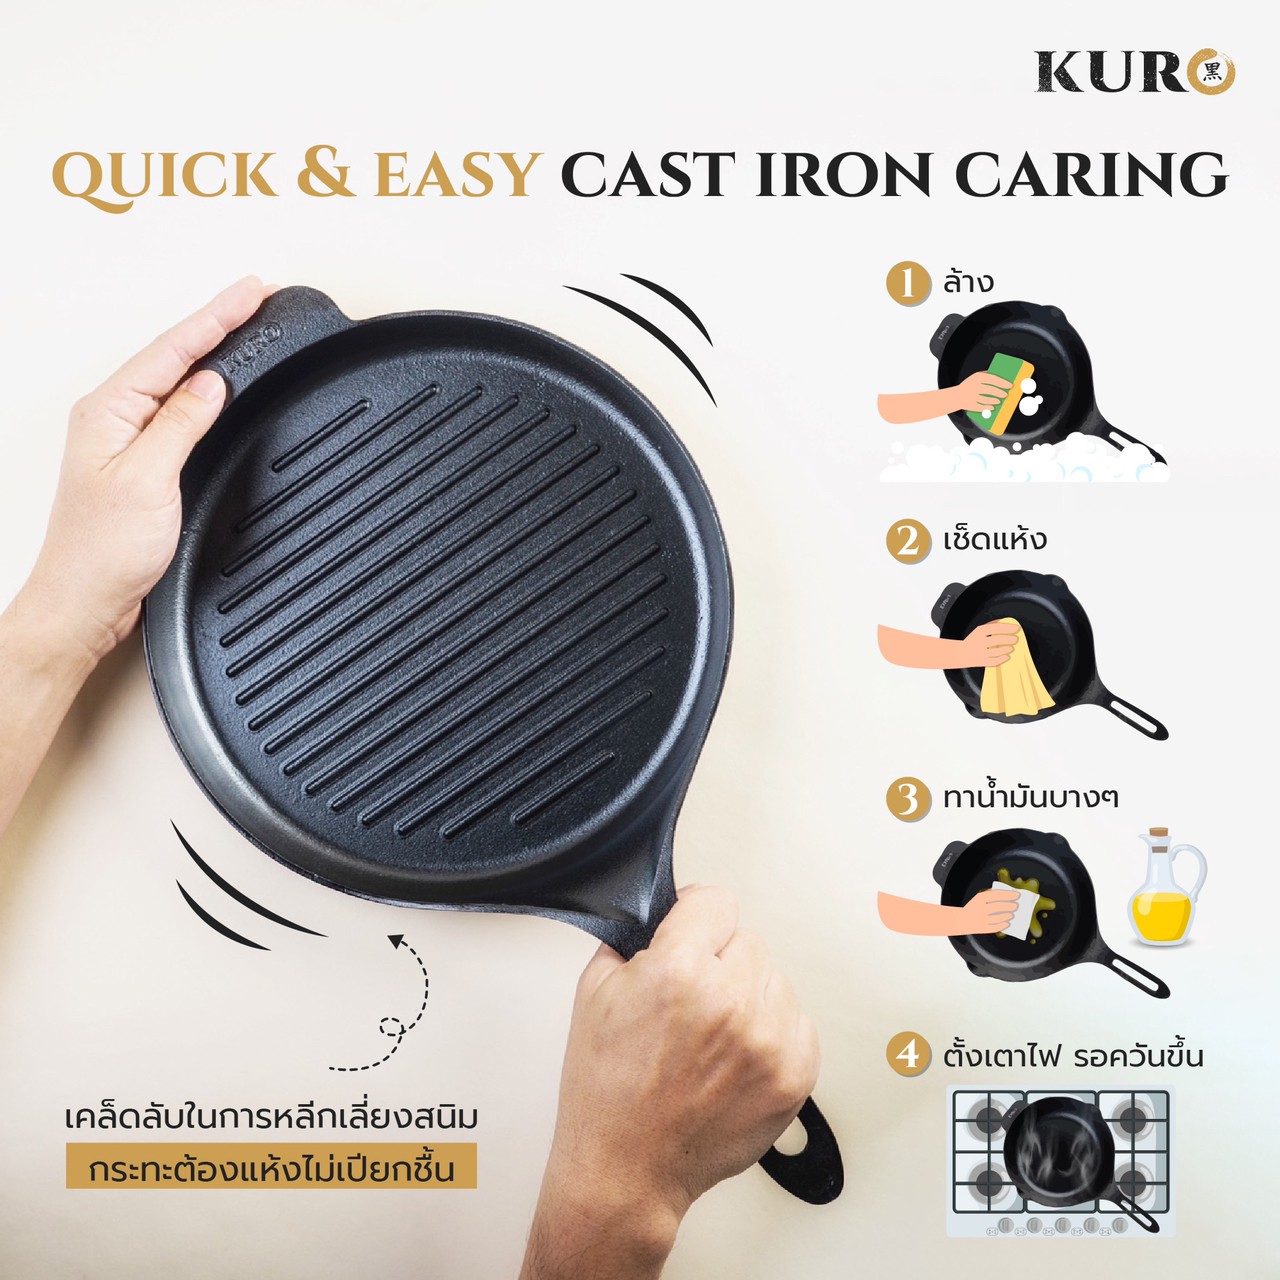 KURO Niku Ridged Grill Cast Iron Pan 10"